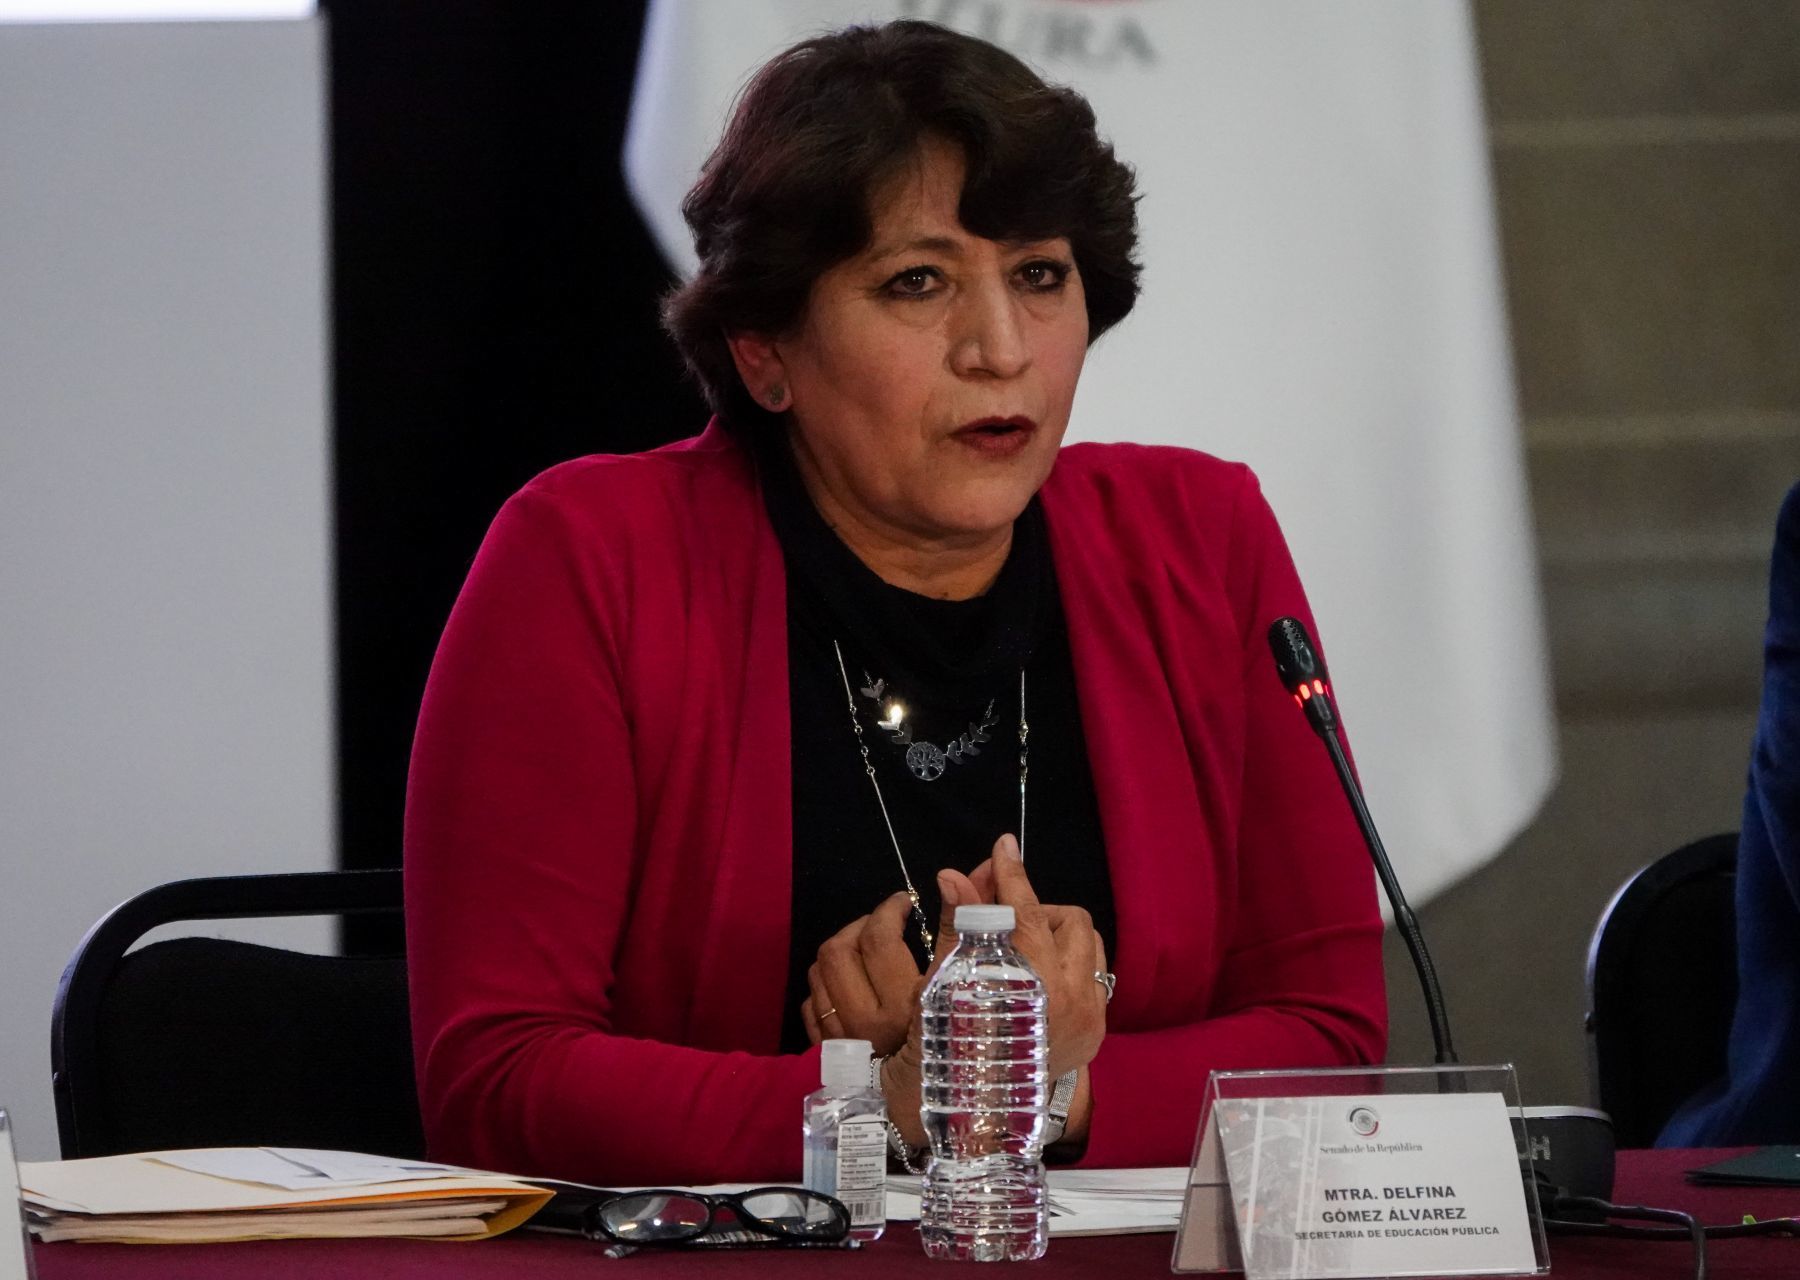 La actual secretaria de Educación, Delfina Gómez, lidera la encuesta entre los posibles candidatos para ganar la elección del Estado de México. (FOTO: GALO CAÑAS/CUARTOSCURO/ ARCHIVO)